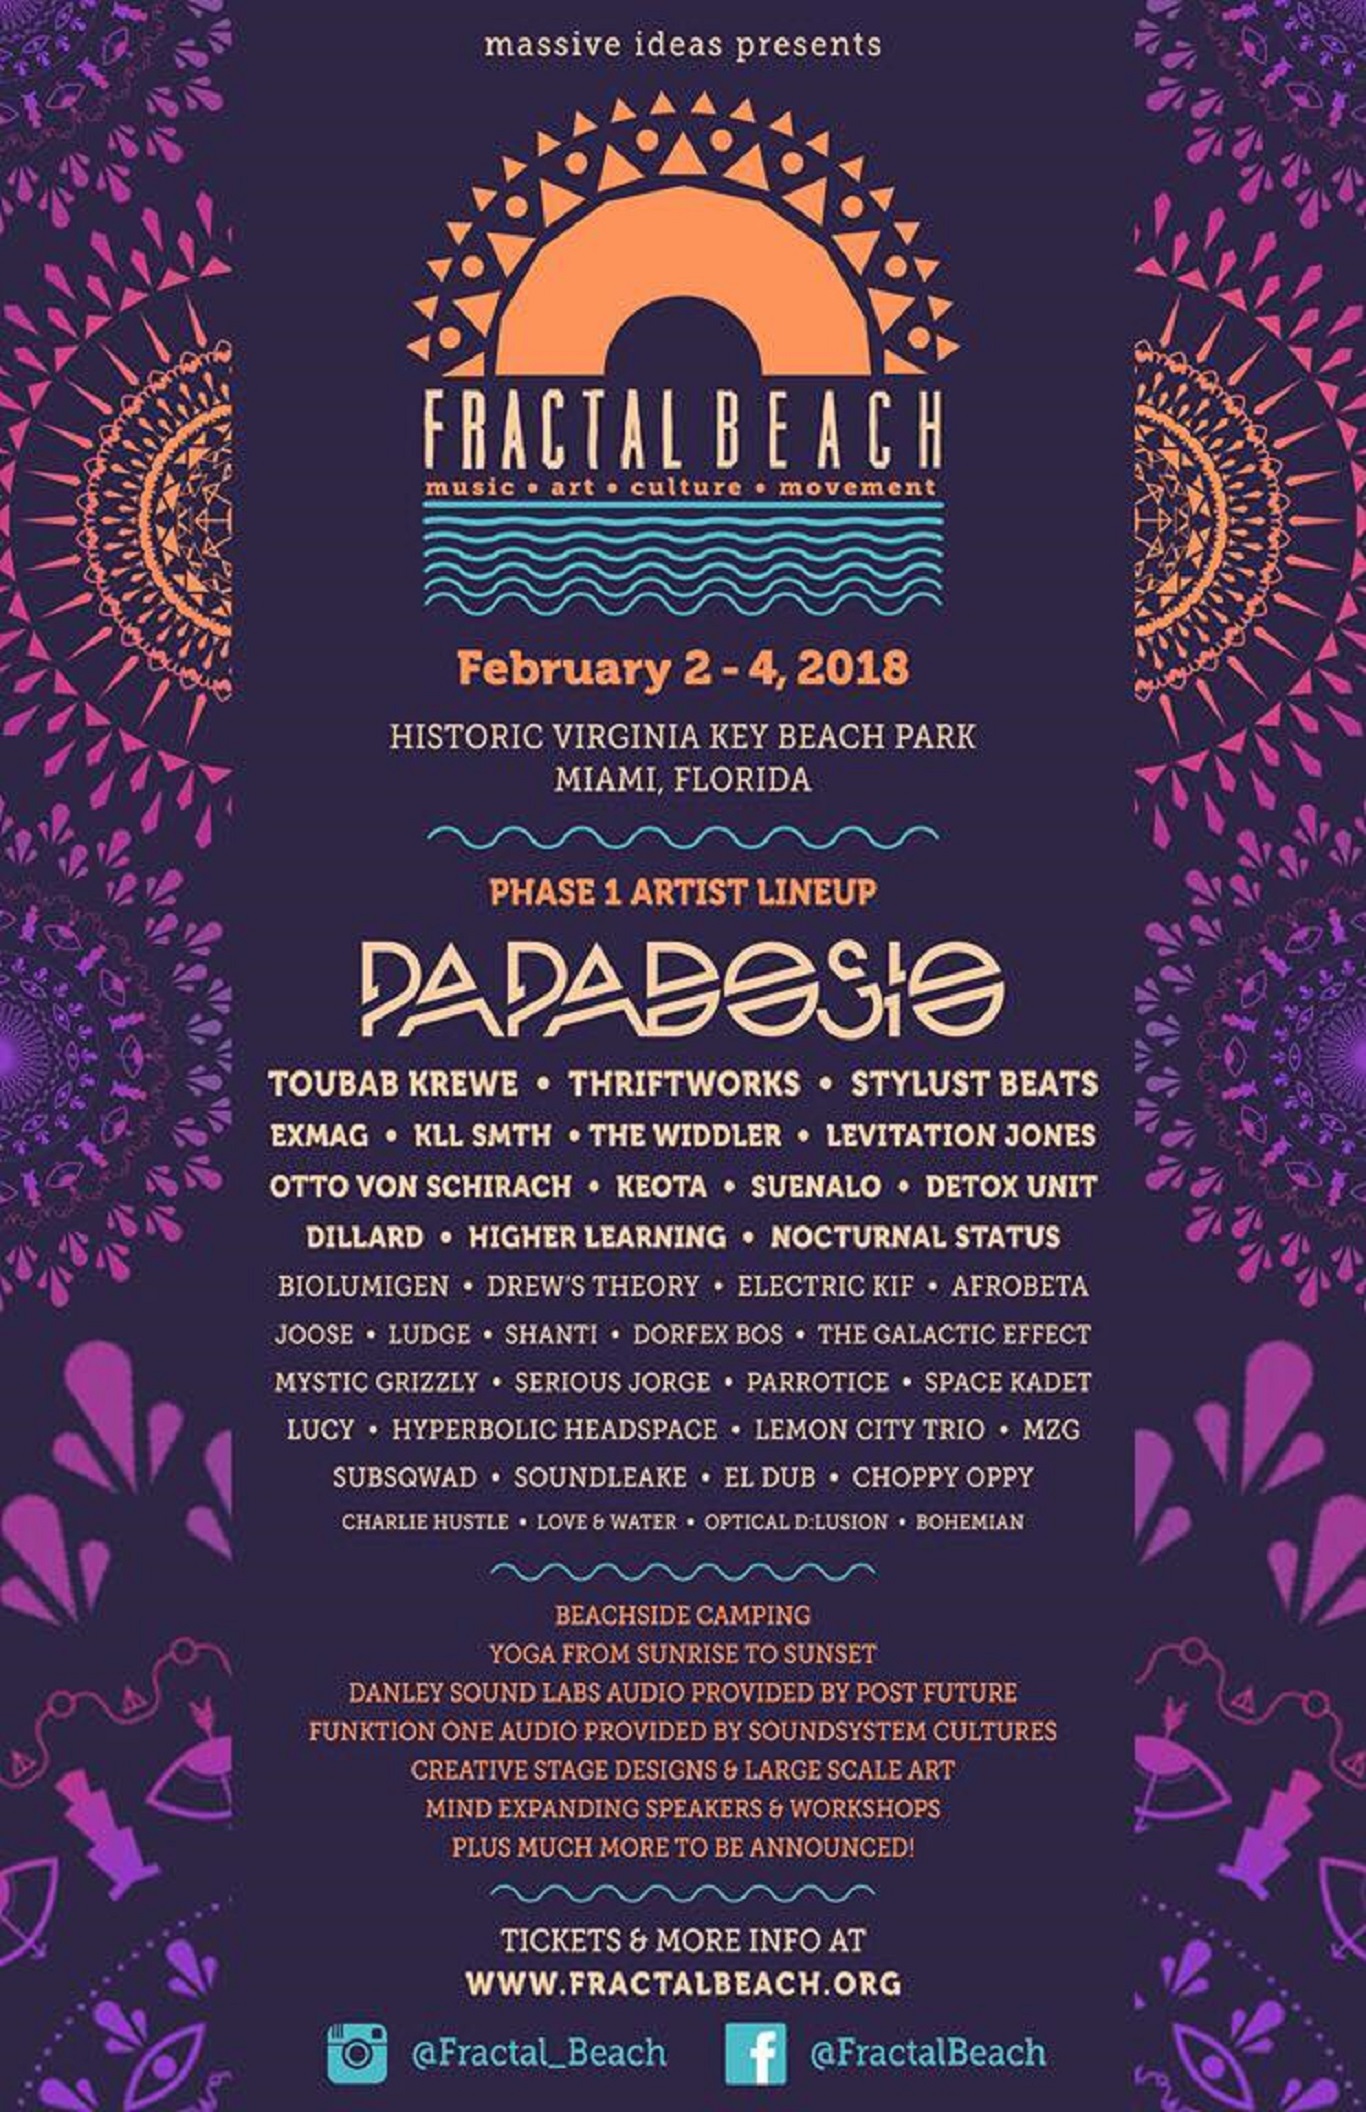 Fractal Beach 2018 Announces Lineup